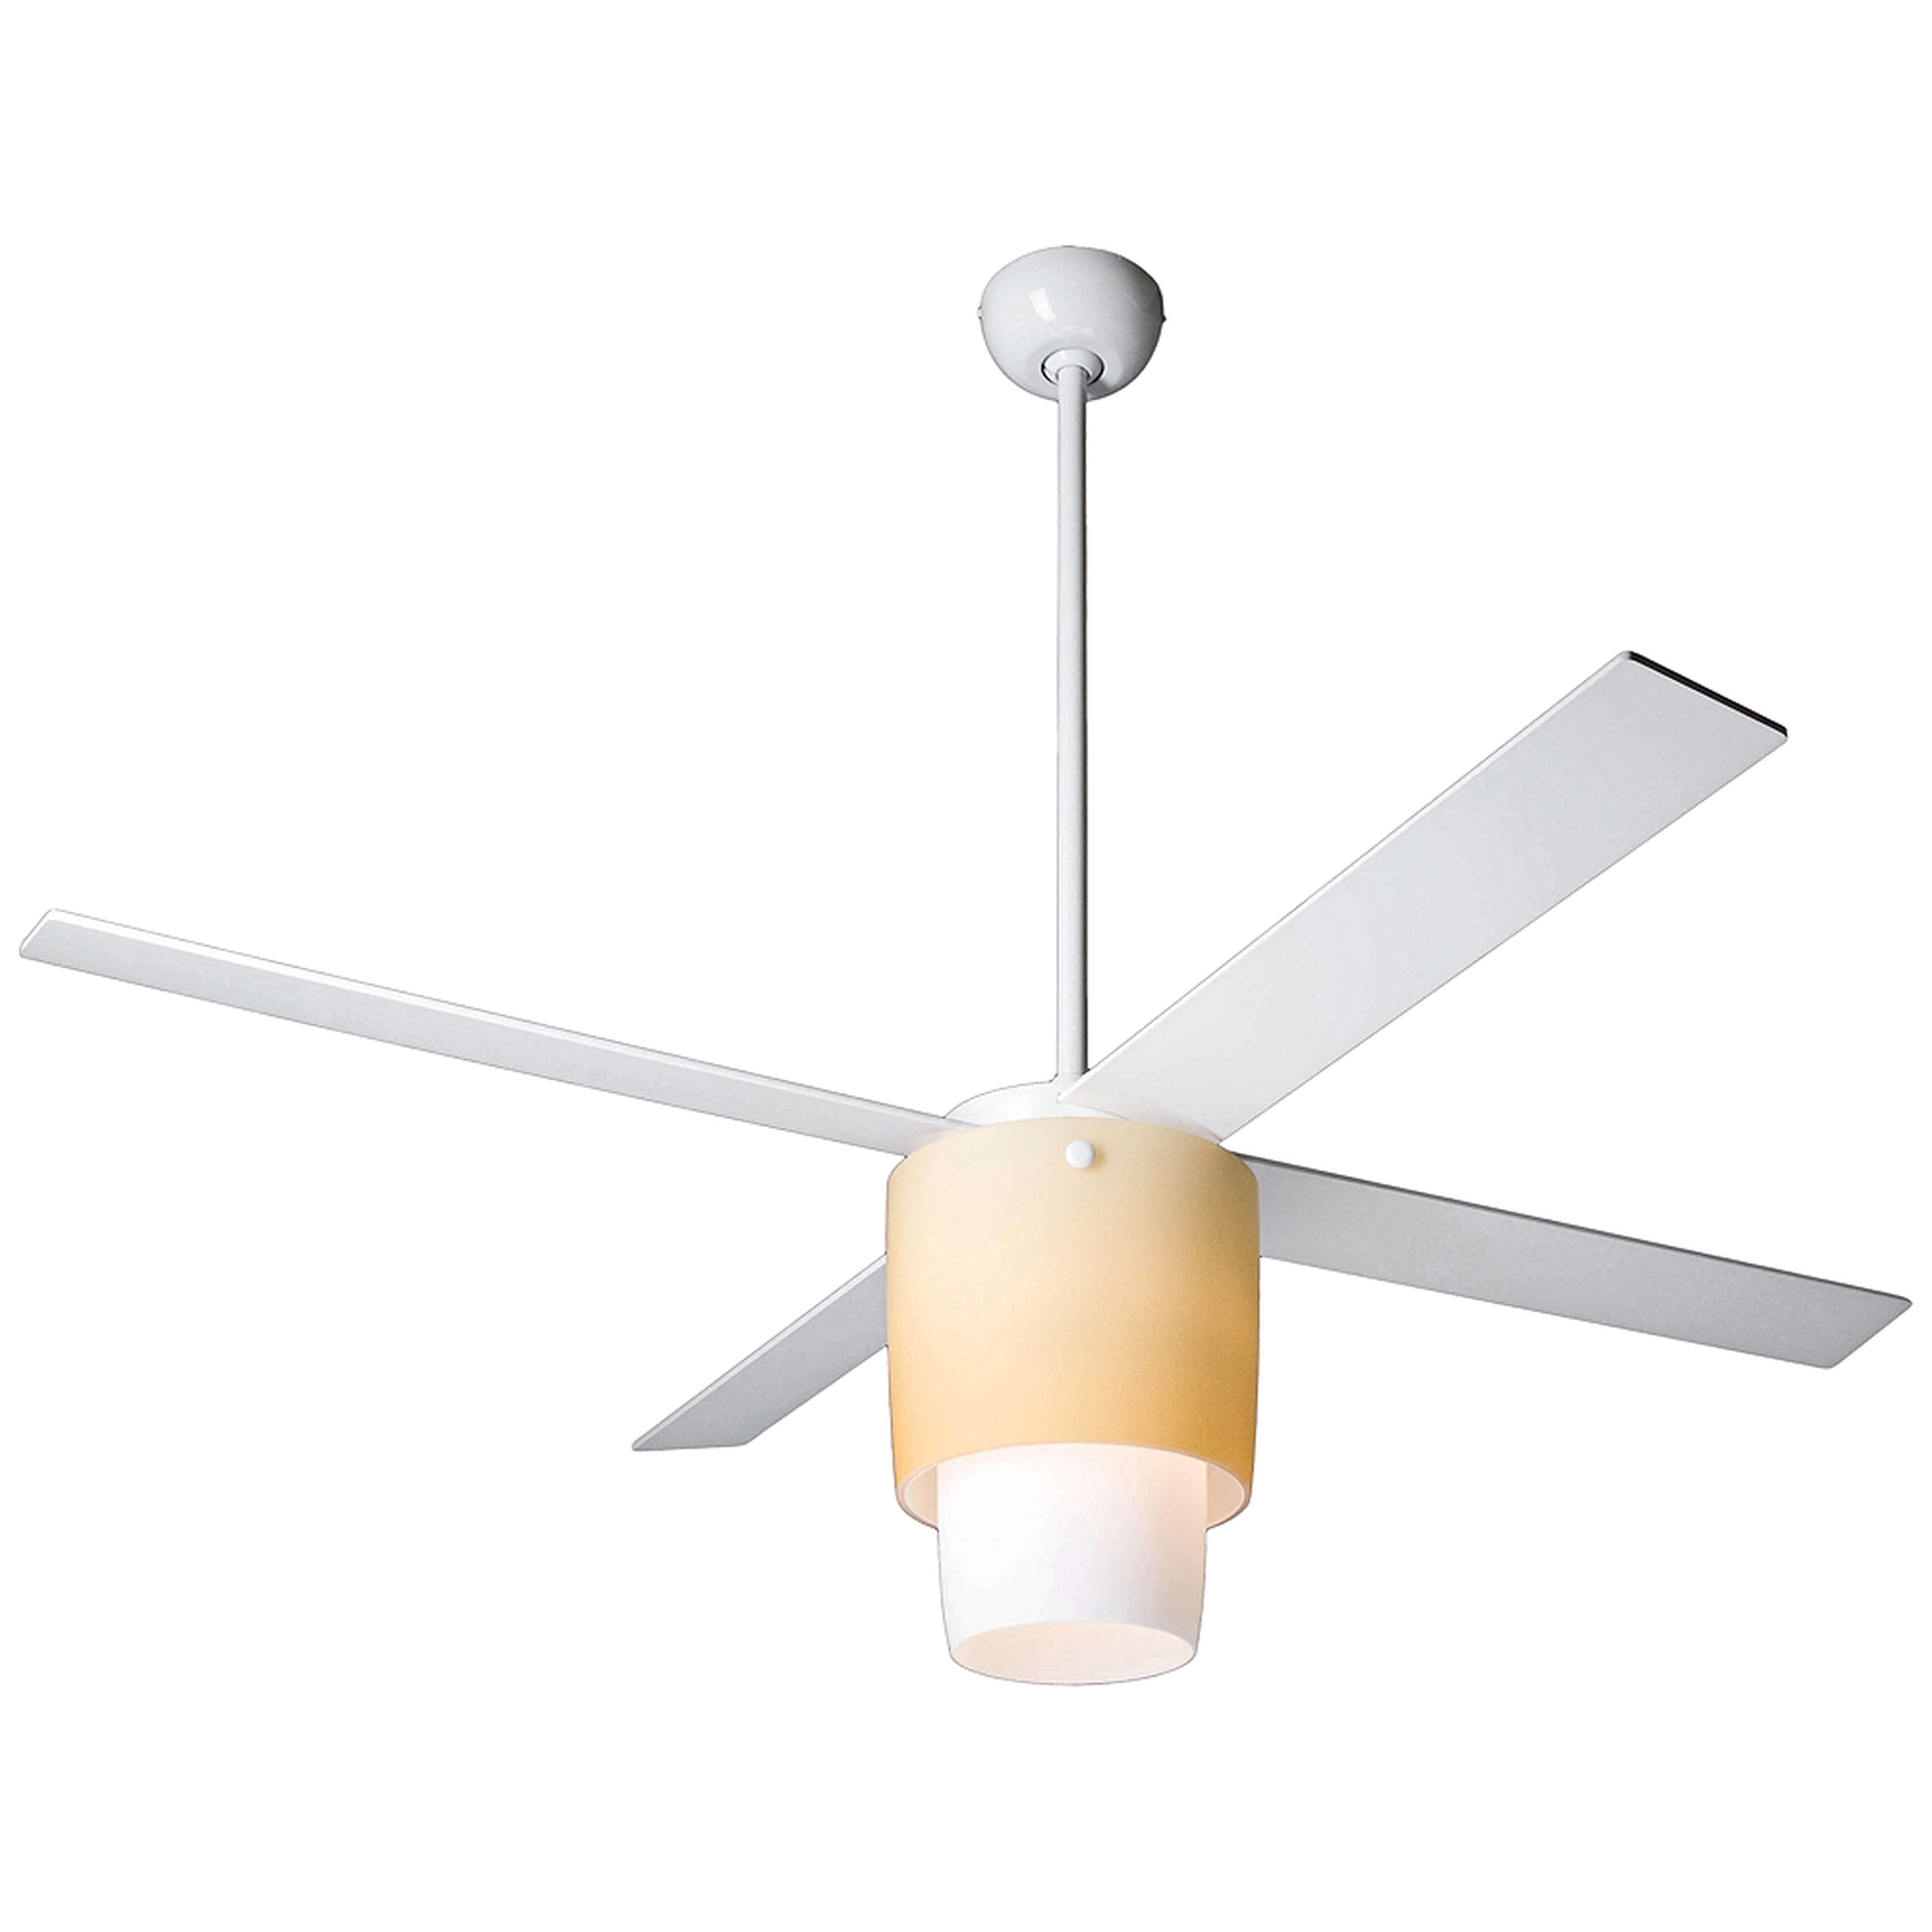 52" Modern Fan Halo Gloss White LED Ceiling Fan - Style # 43H73 - Lamps Plus